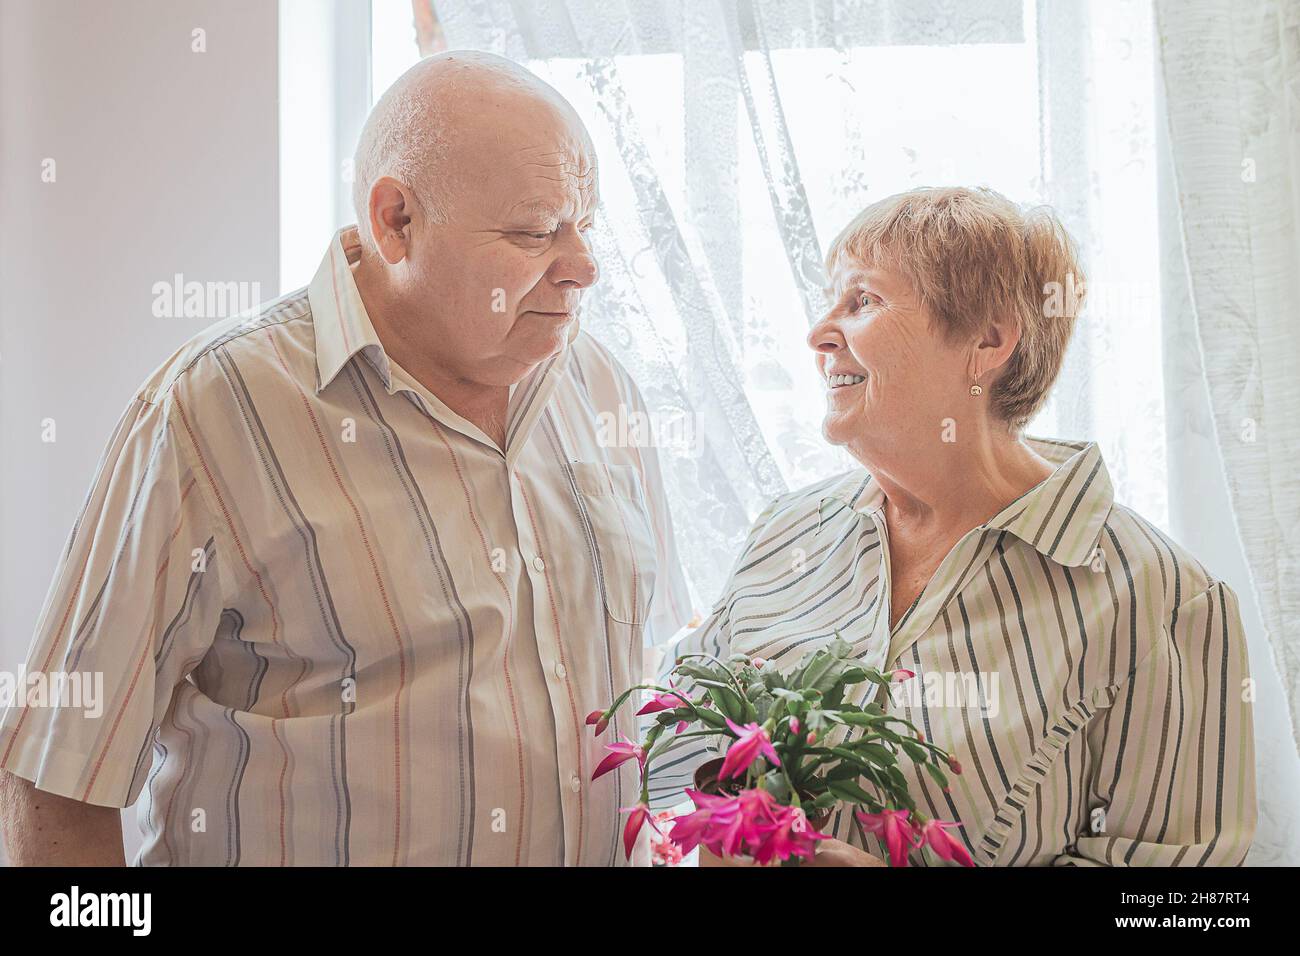 Anziano uomo caucasico con capelli bianchi corpo grande costruire e anziano donna bionda capelli stanno guardando l'un l'altro in amore nella stanza vicino alla finestra. Pianta di fioritura Foto Stock